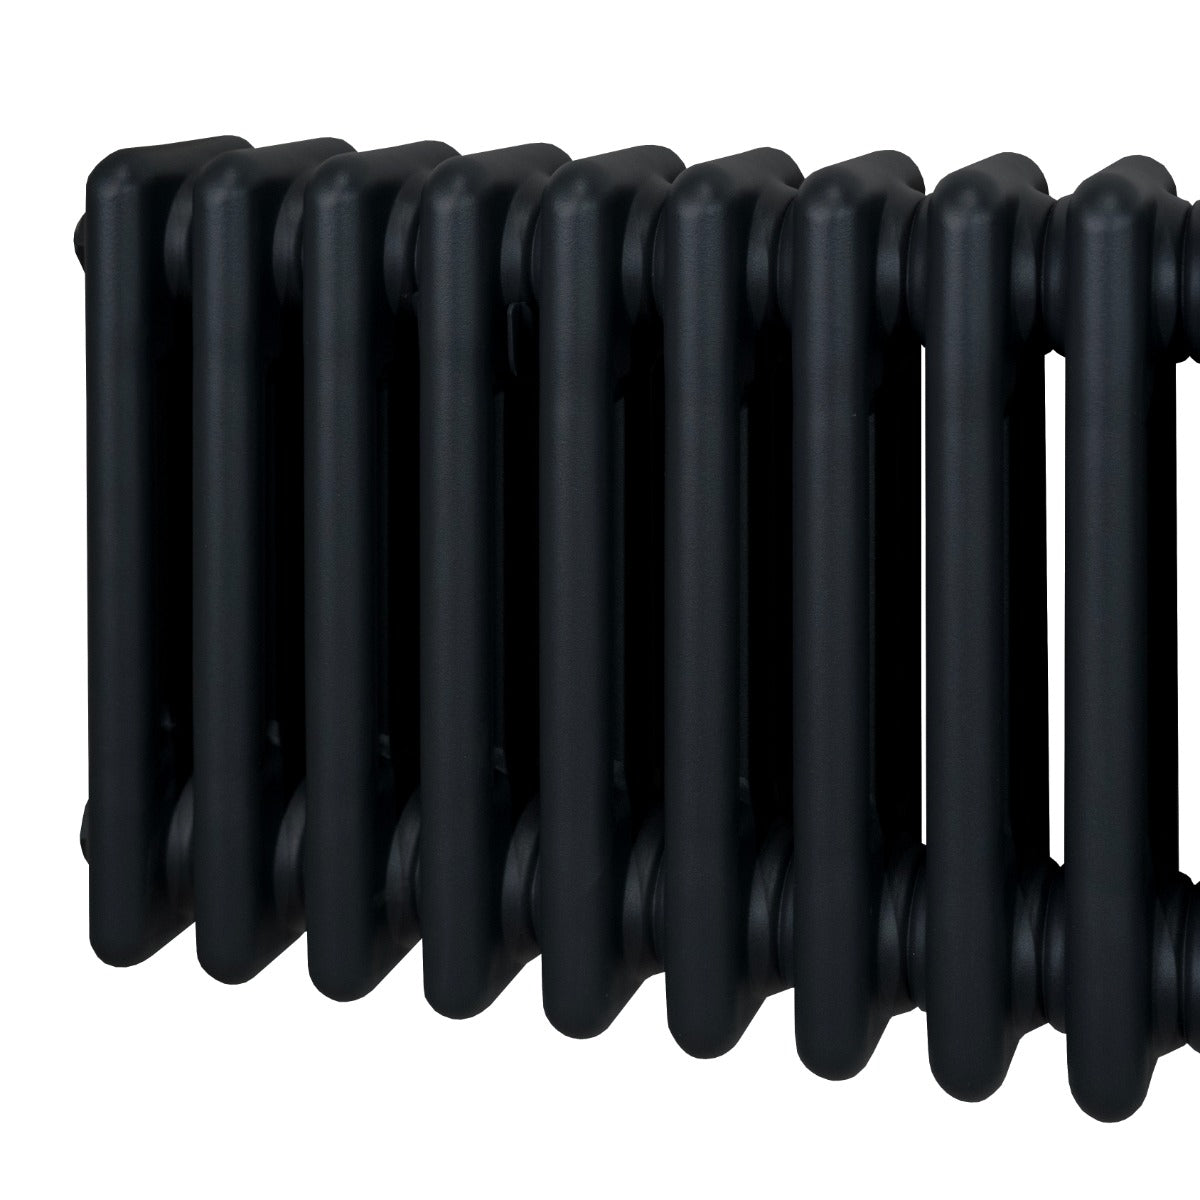 Radiateur Traditionnel à Triple Colonne – 1500 x 562 mm – Noir